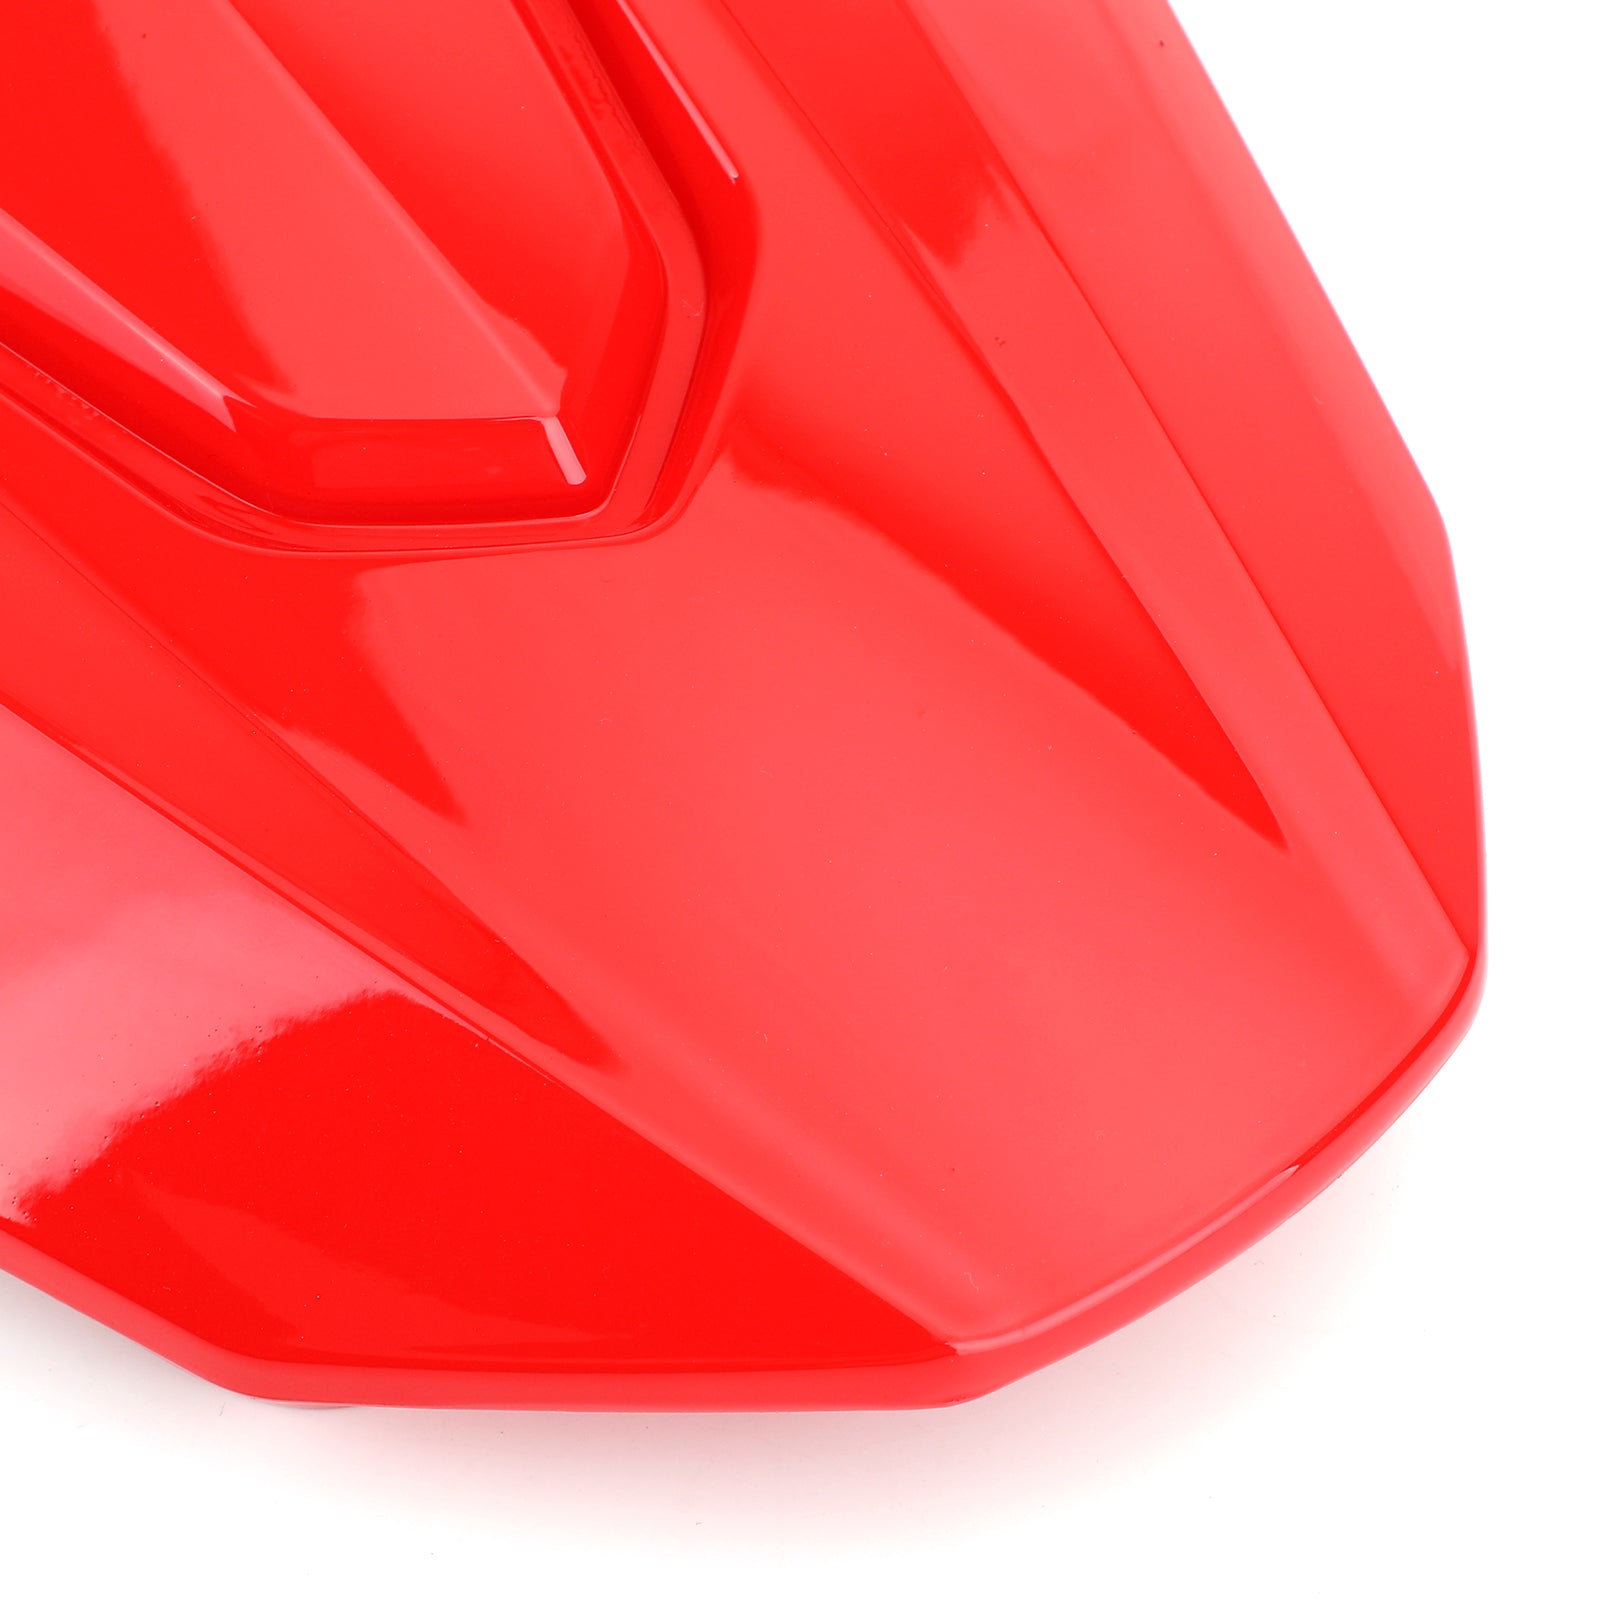 Carenatura del cappuccio della copertura del passeggero del sedile posteriore del motociclo Honda CBR650R 2019-2020